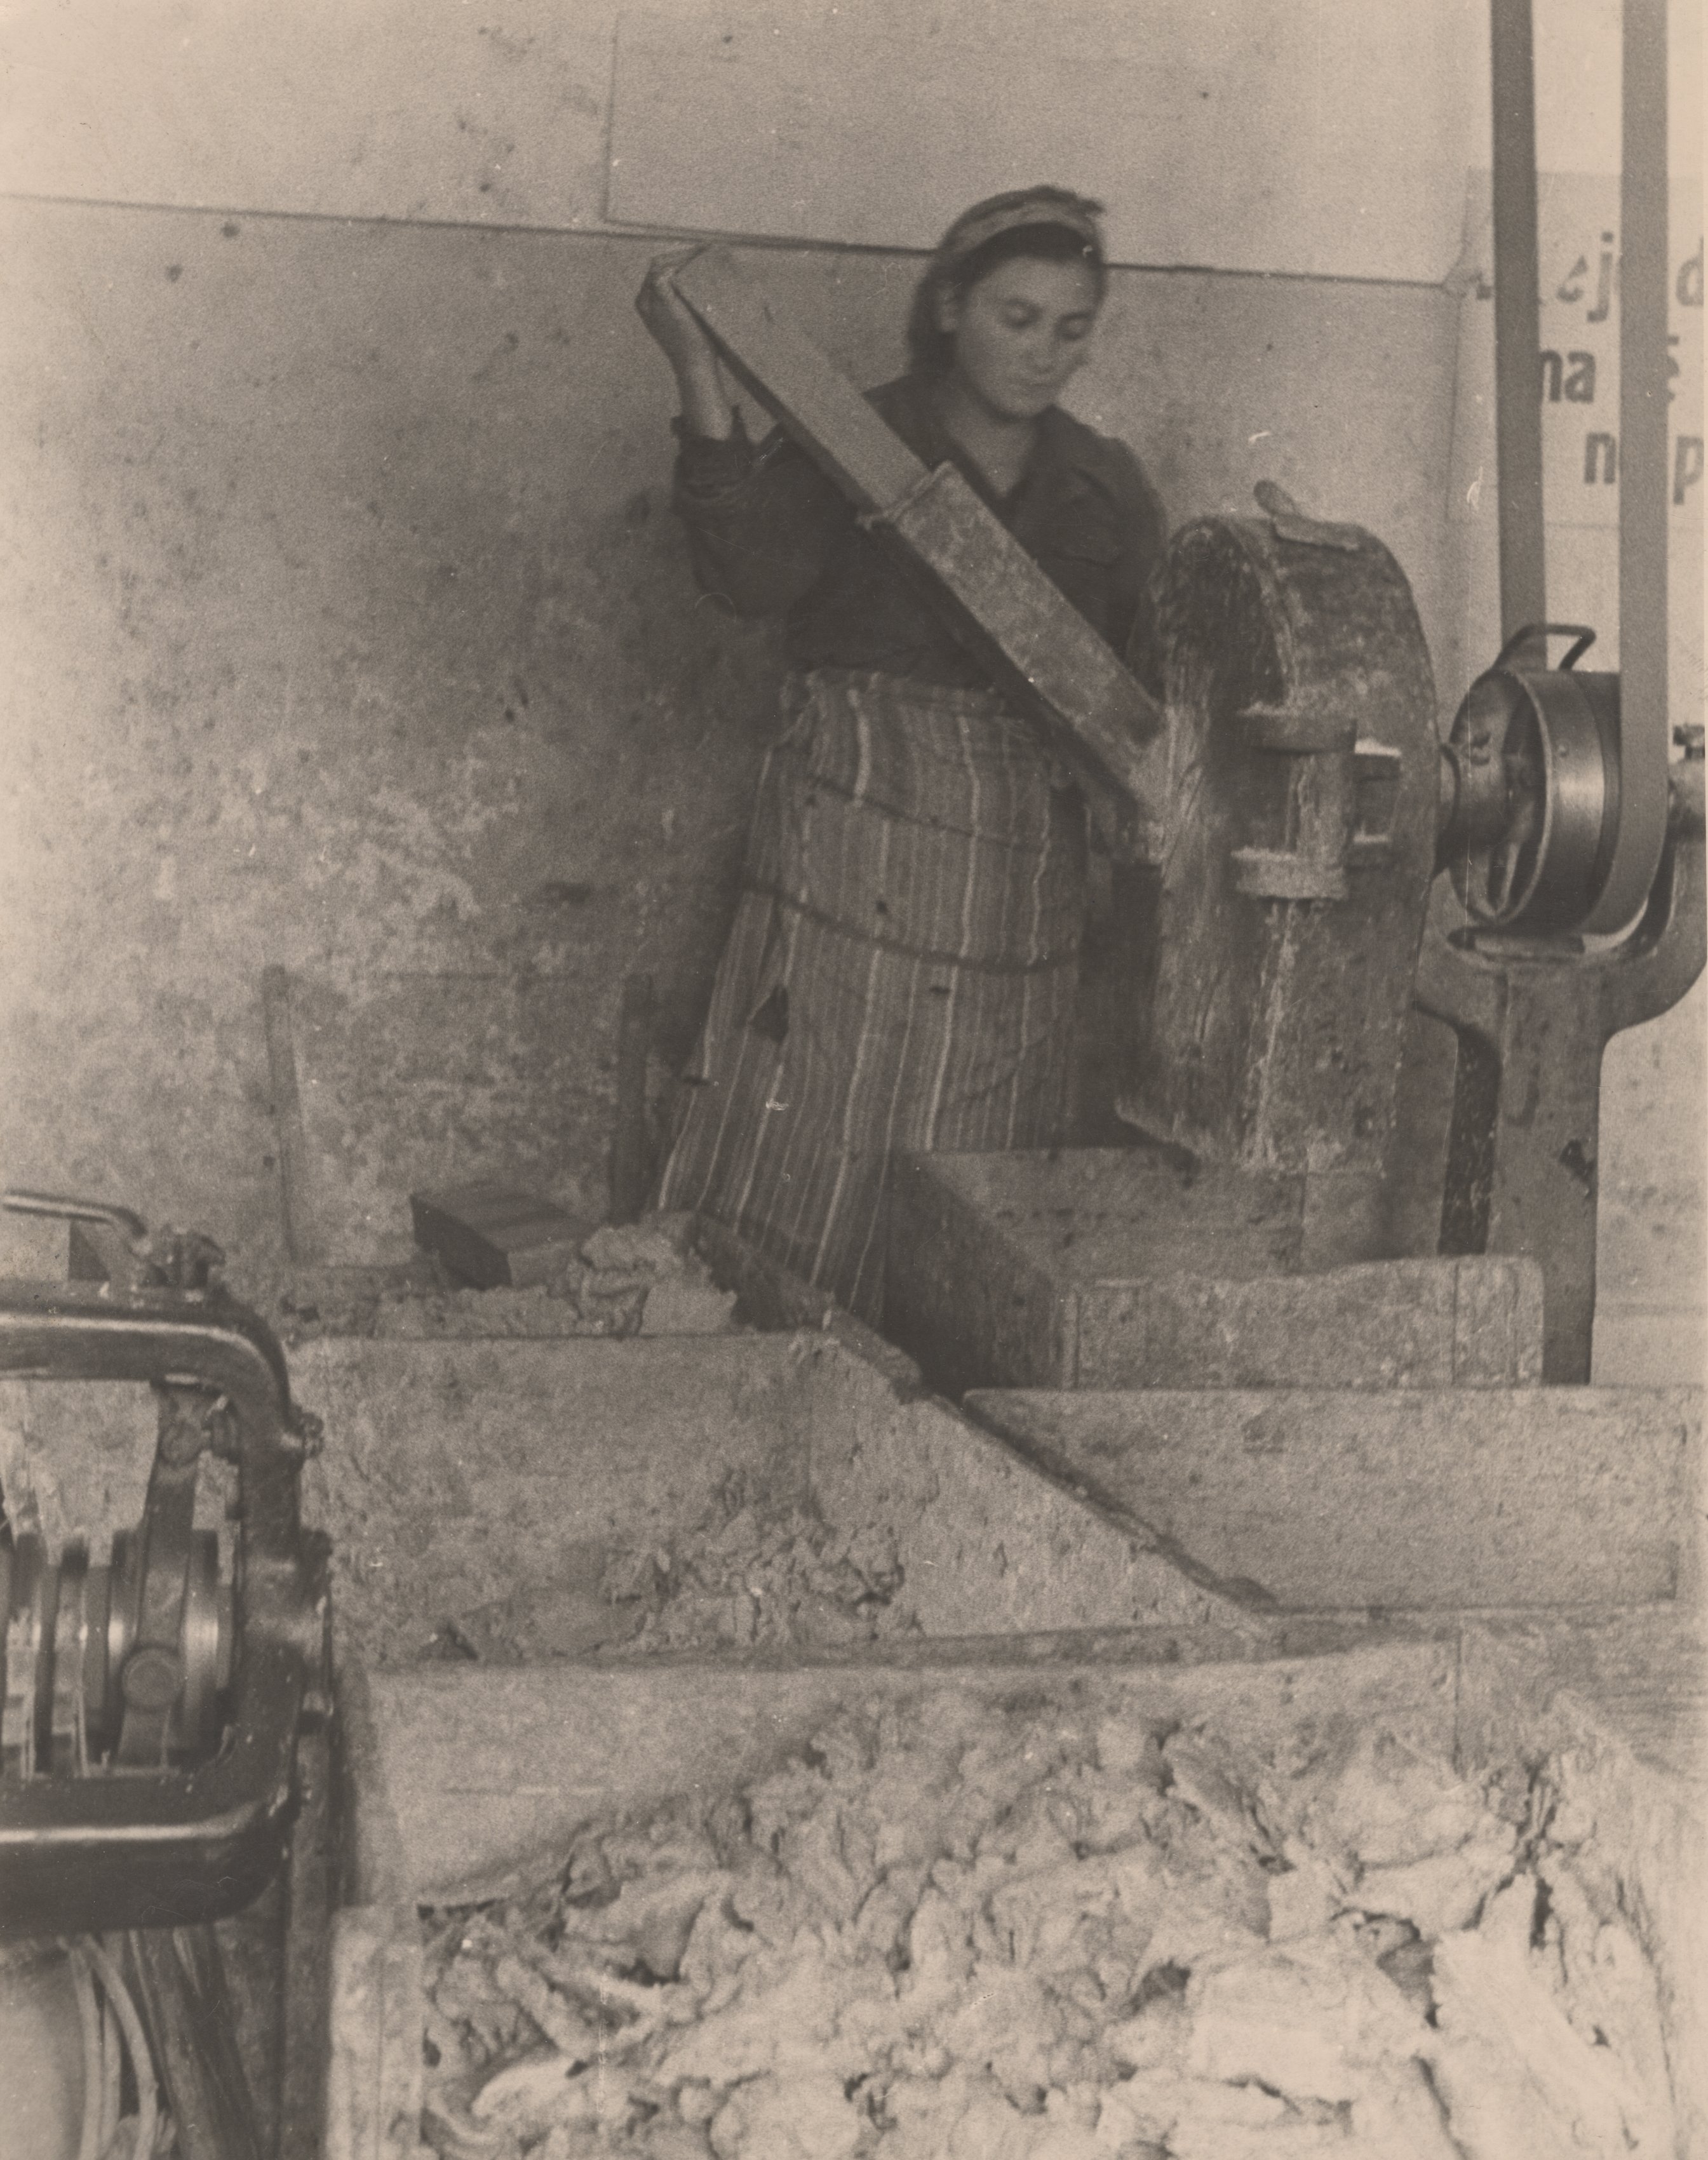 the soap workshop in Shkodra (after 1944)